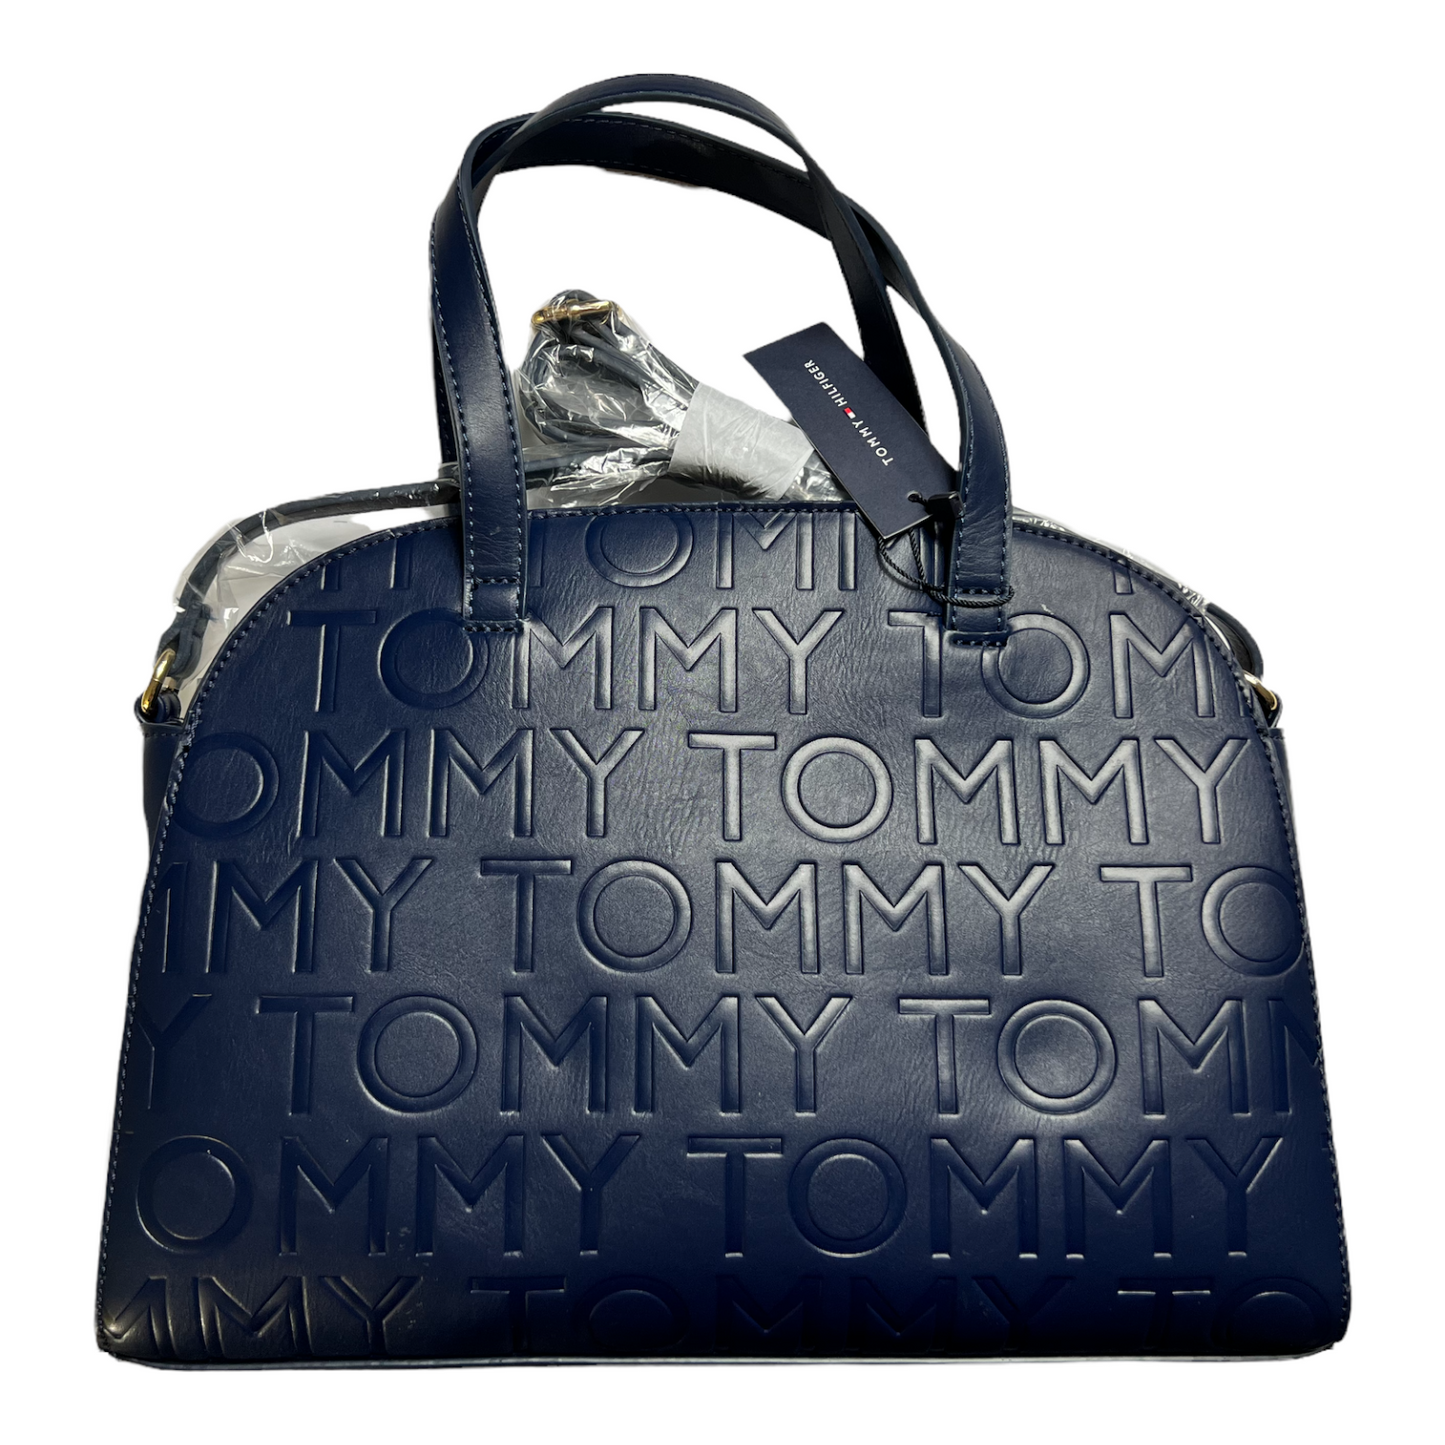 New Tommy Hilfiger Handbag.